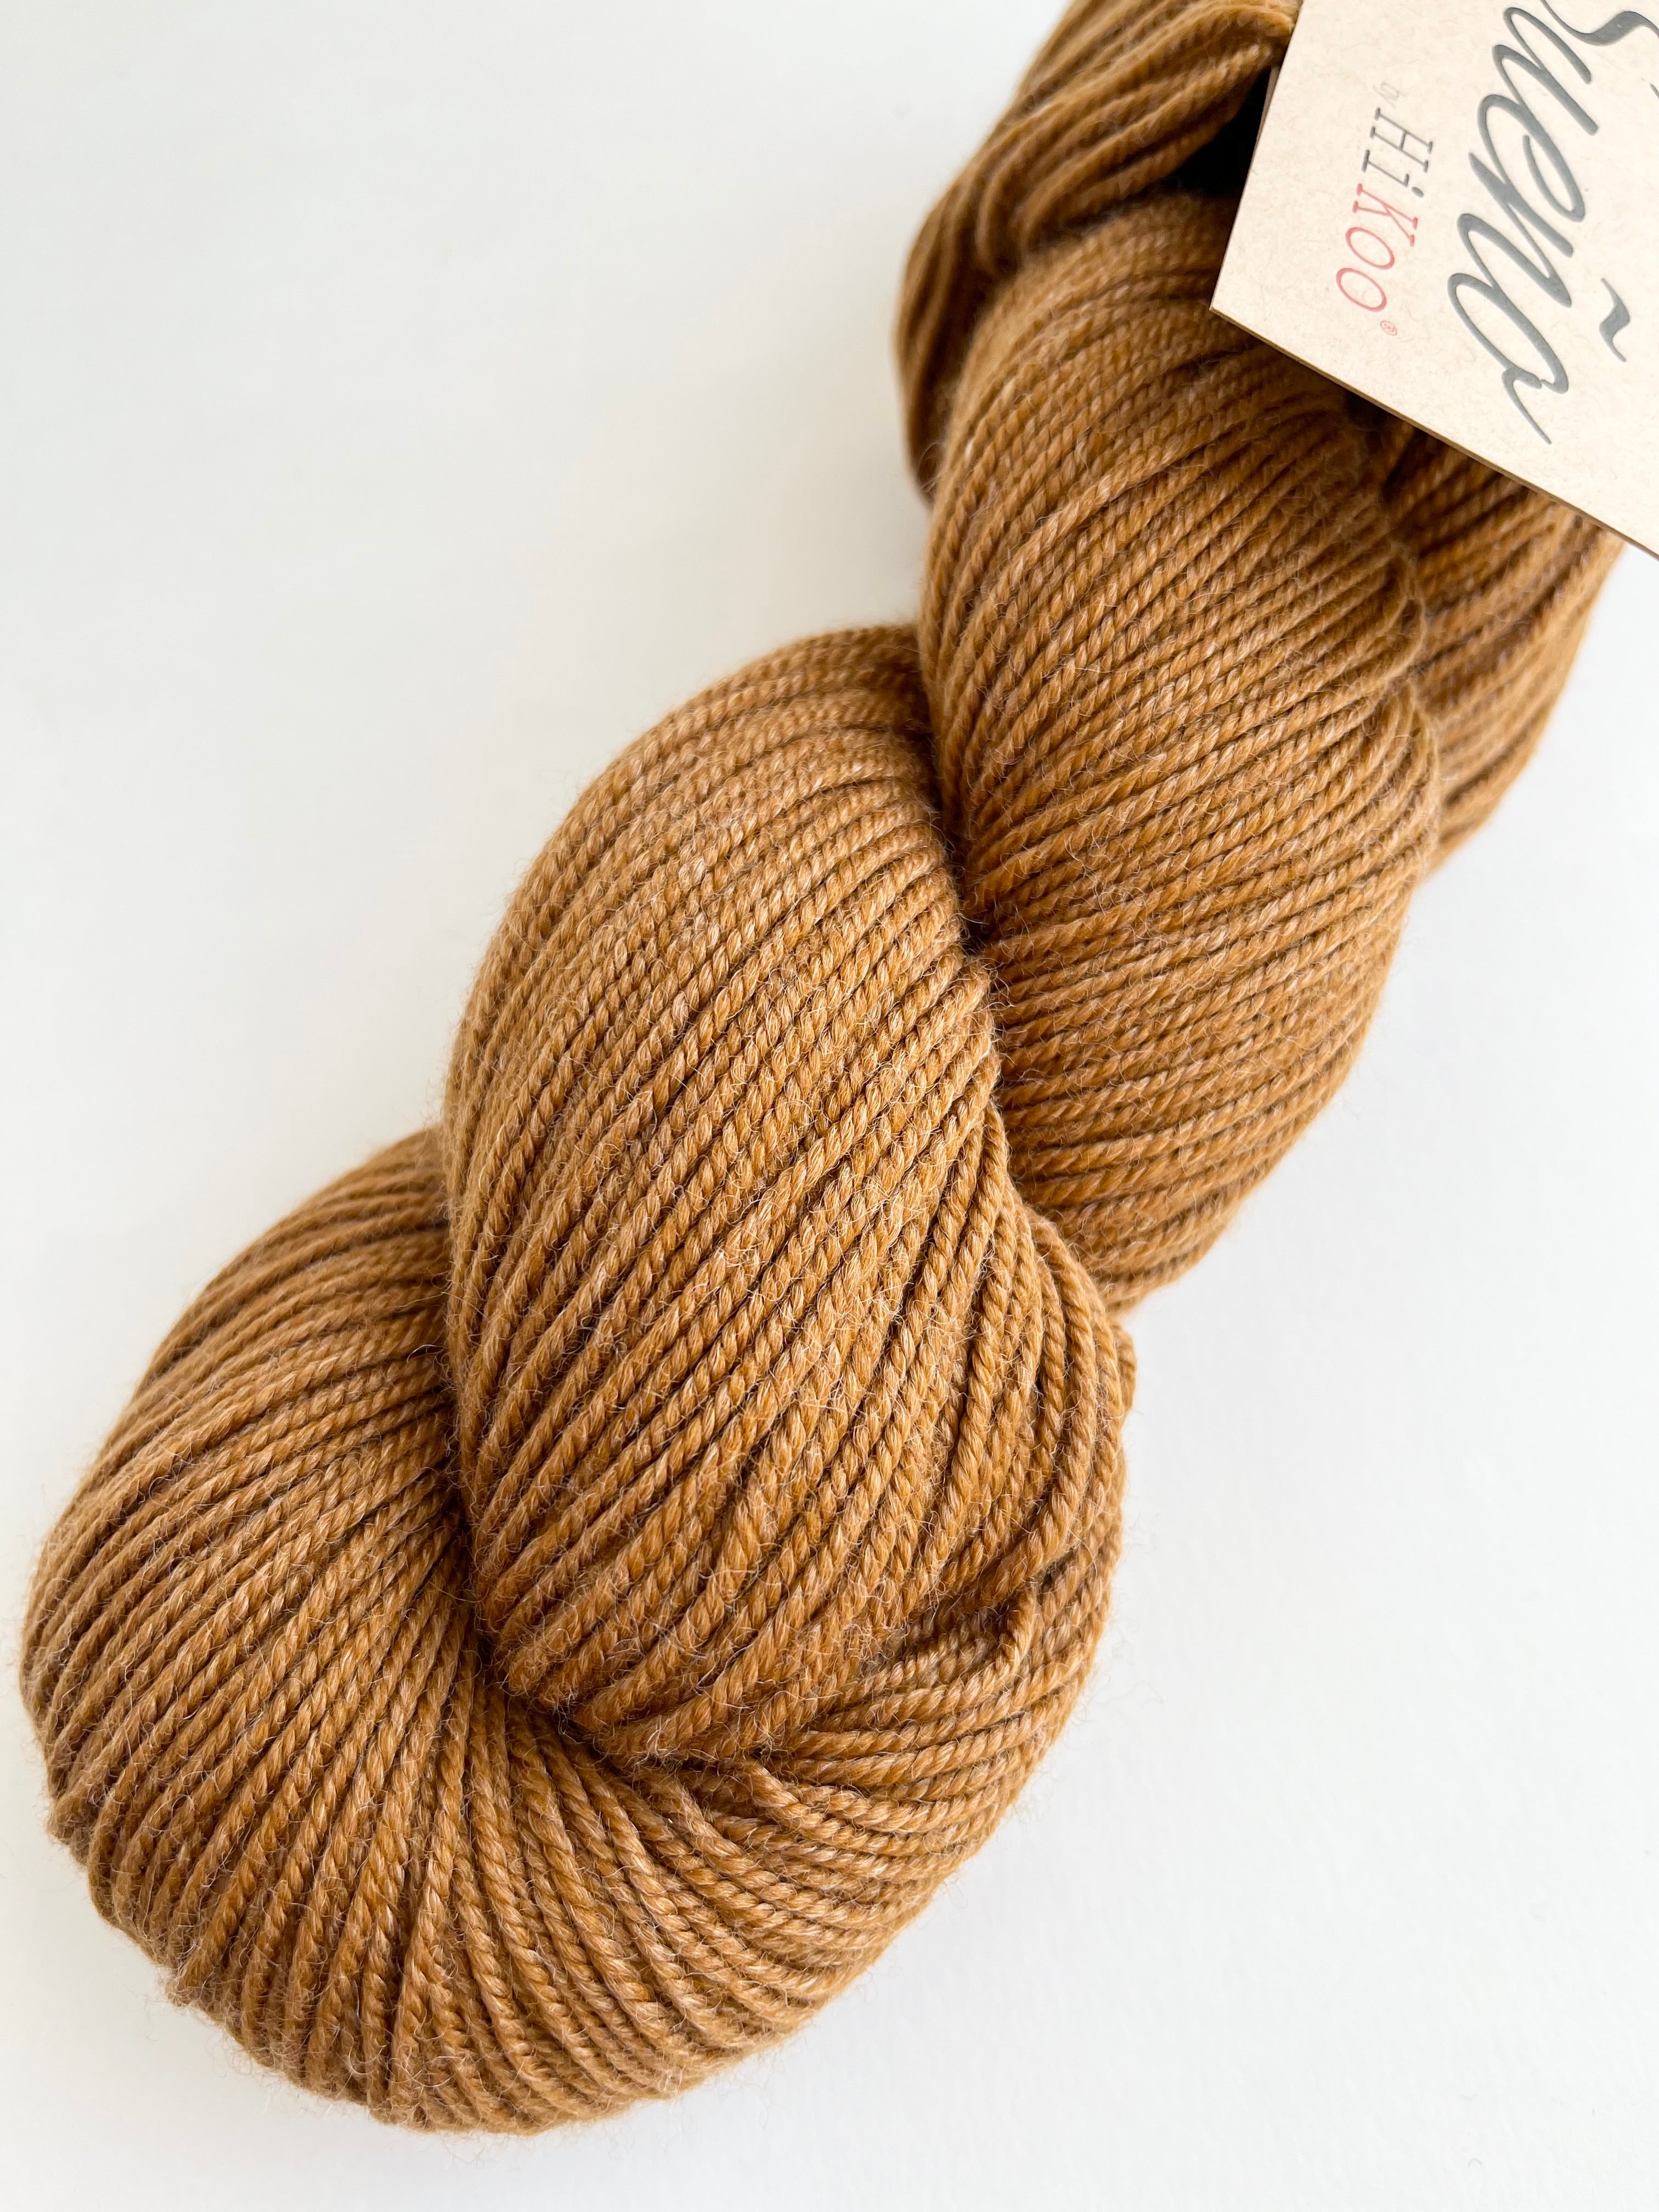 Caramel - Sueño yarn from HiKoo